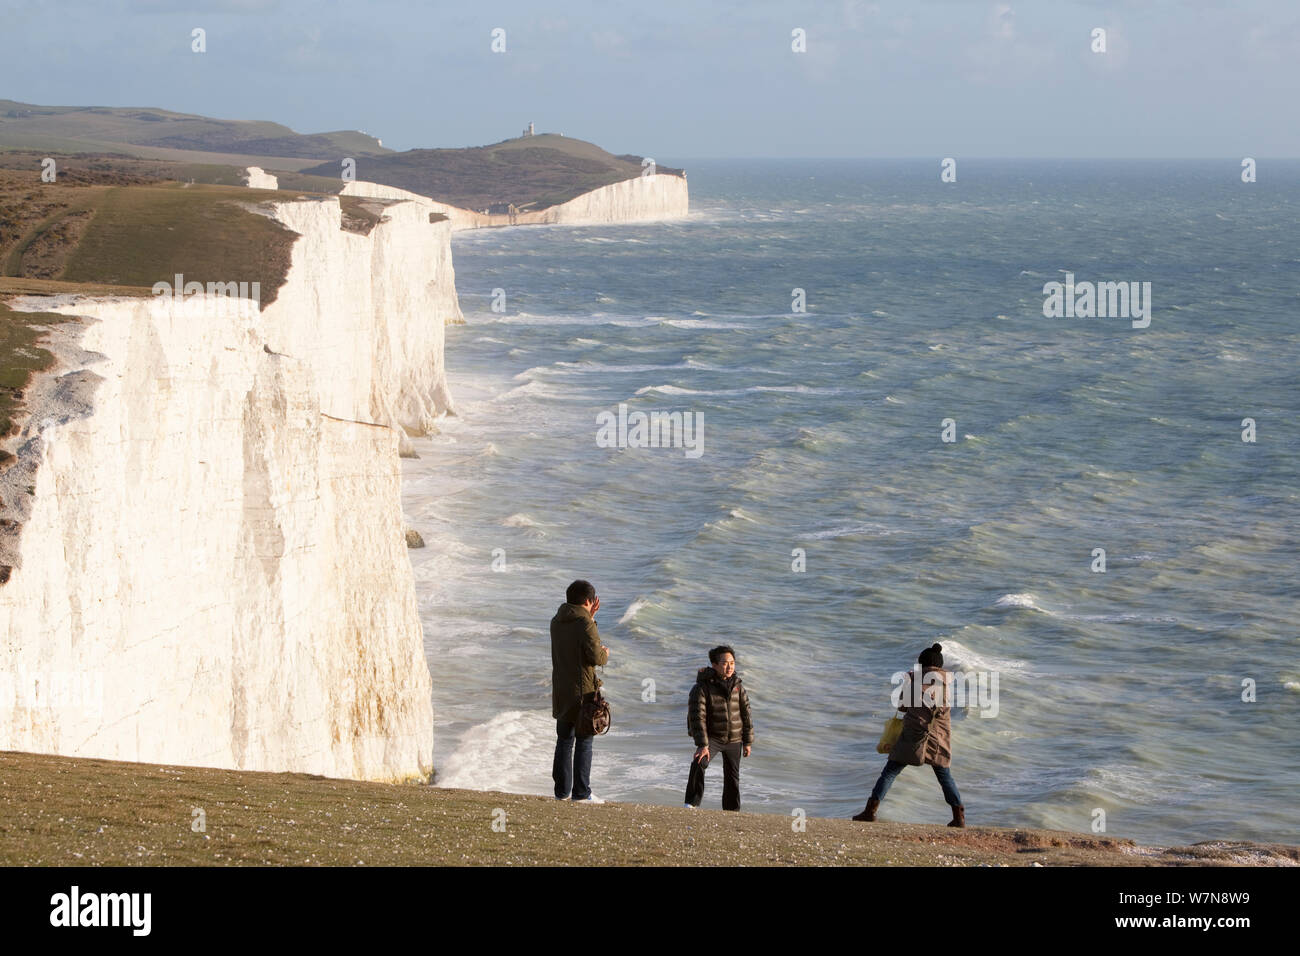 Les gens à prendre des photos en face de sept Sœurs des falaises de craie avec une mer agitée. South Downs, Angleterre, novembre 2011. Banque D'Images